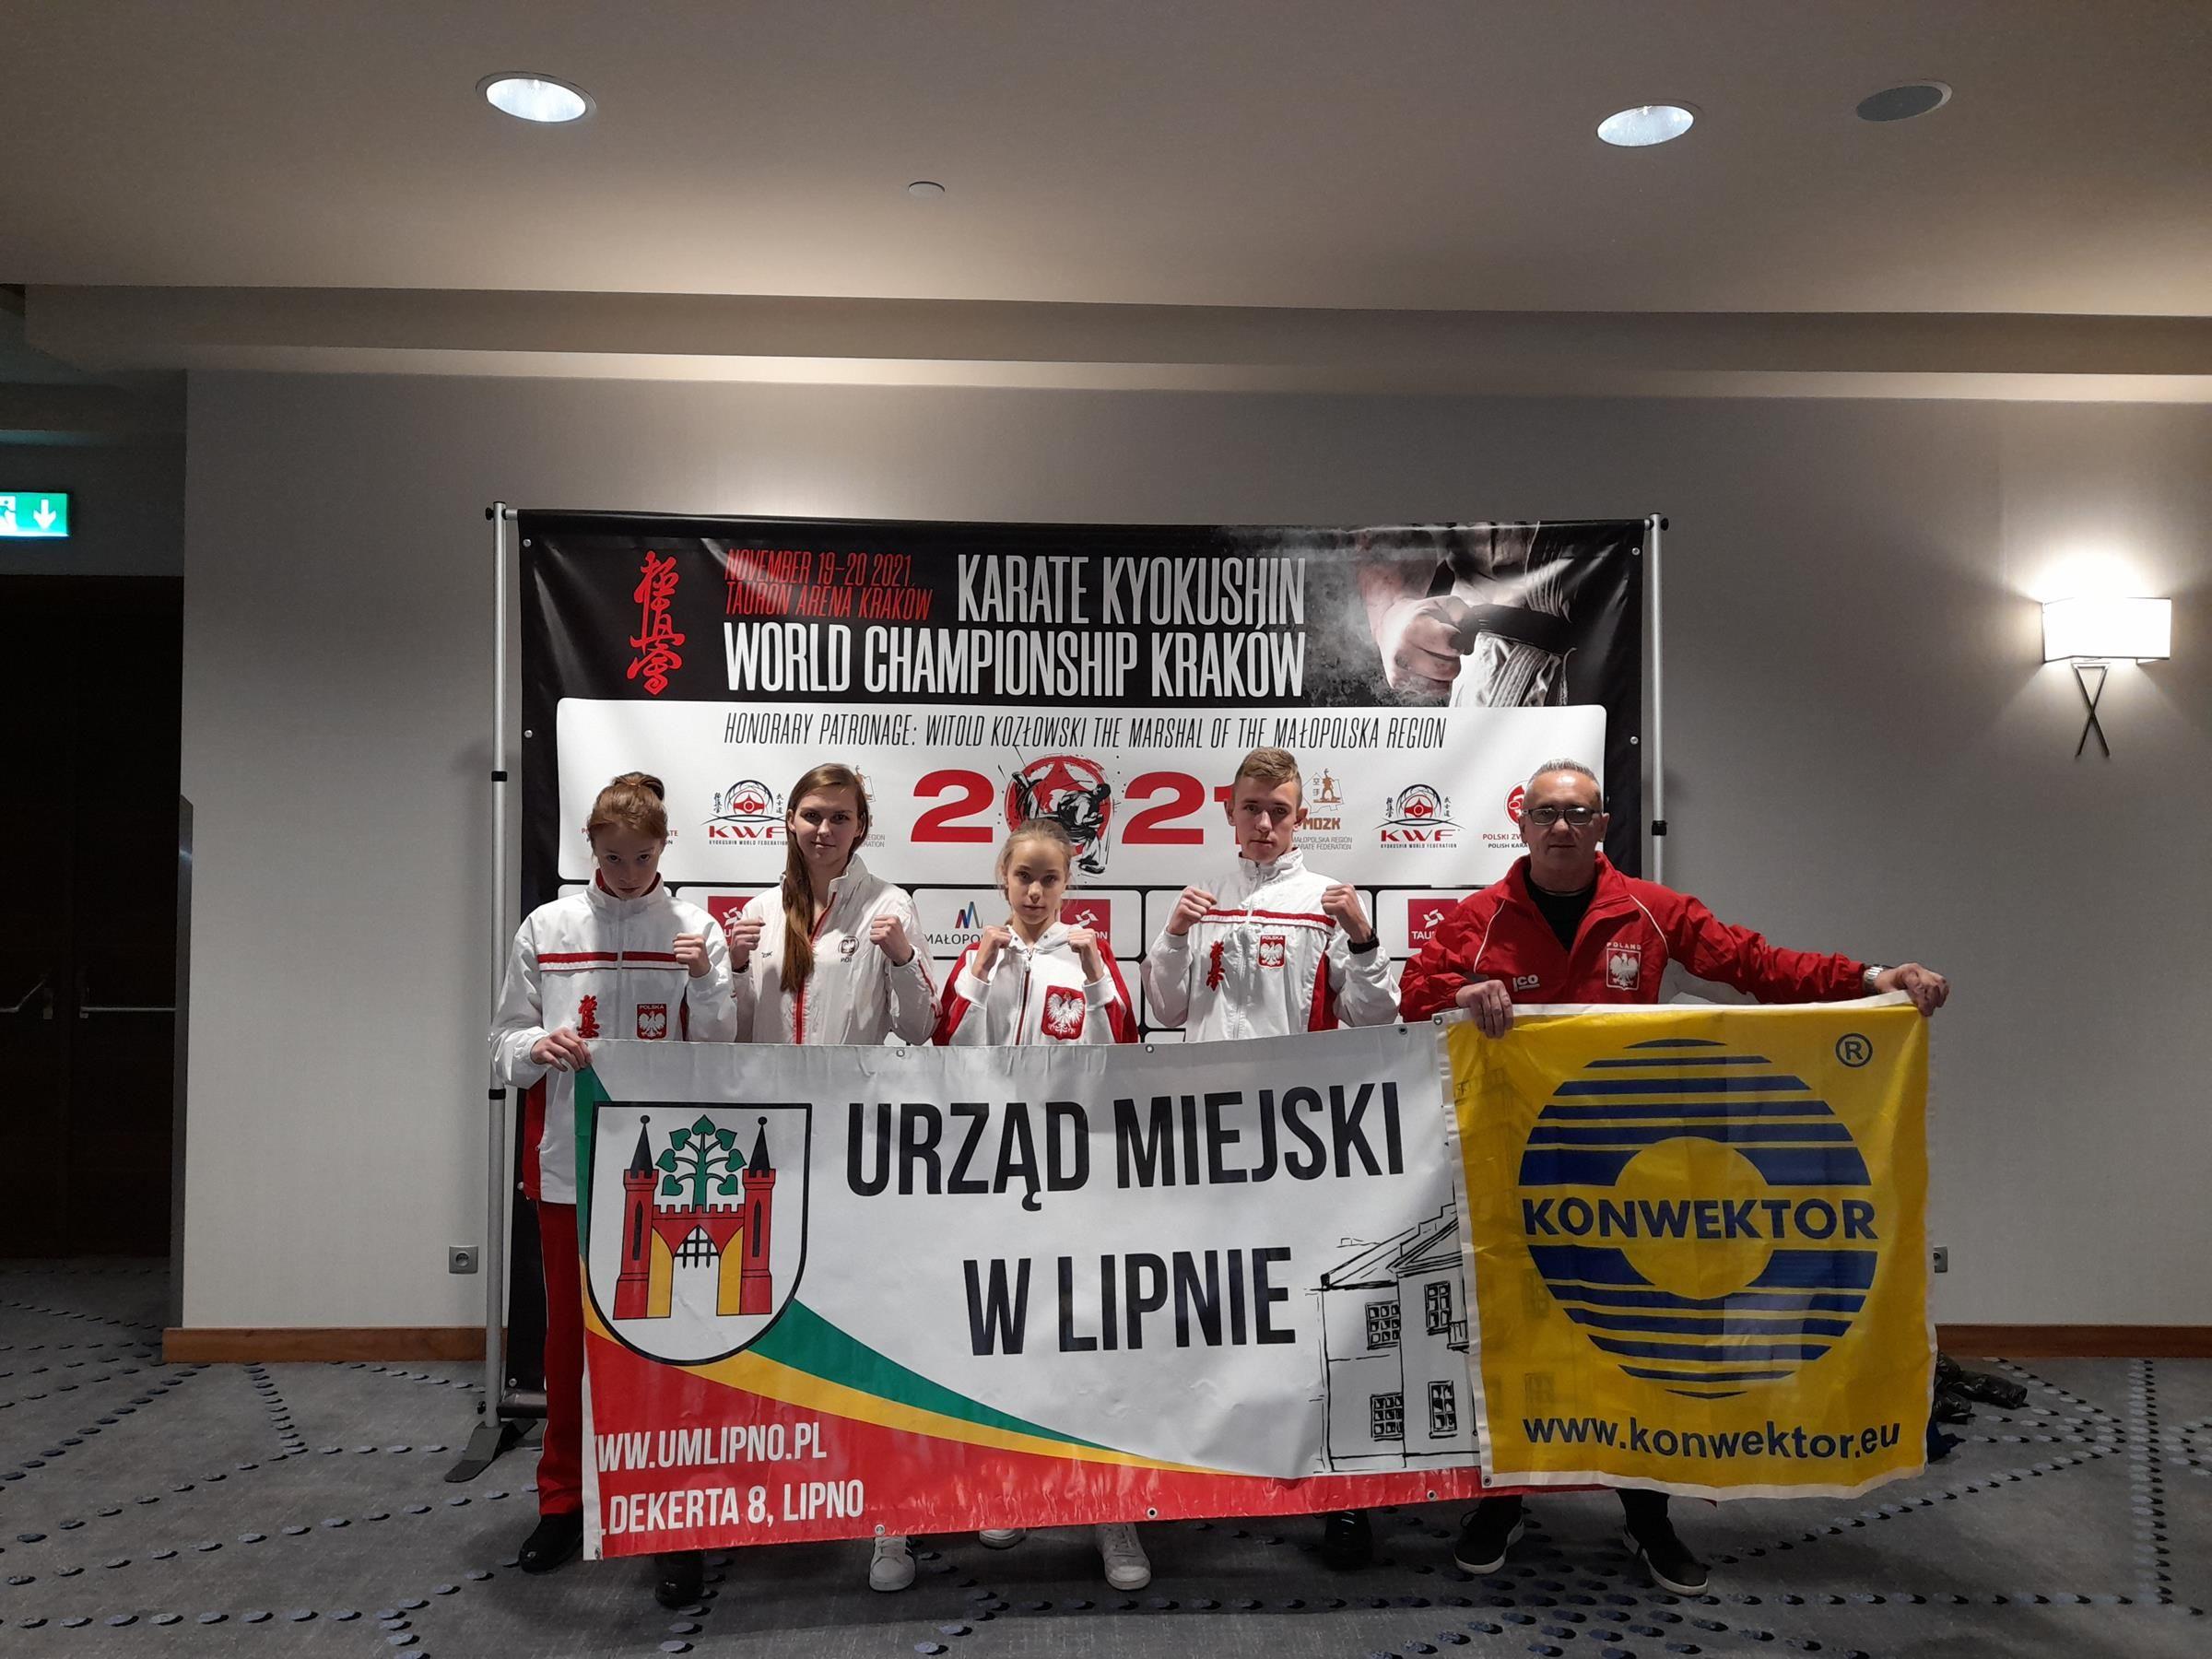 Zdj. nr. 1. Mistrzostw Świata w Karate Kyokushin - 19-20.11.2021 r., Kraków